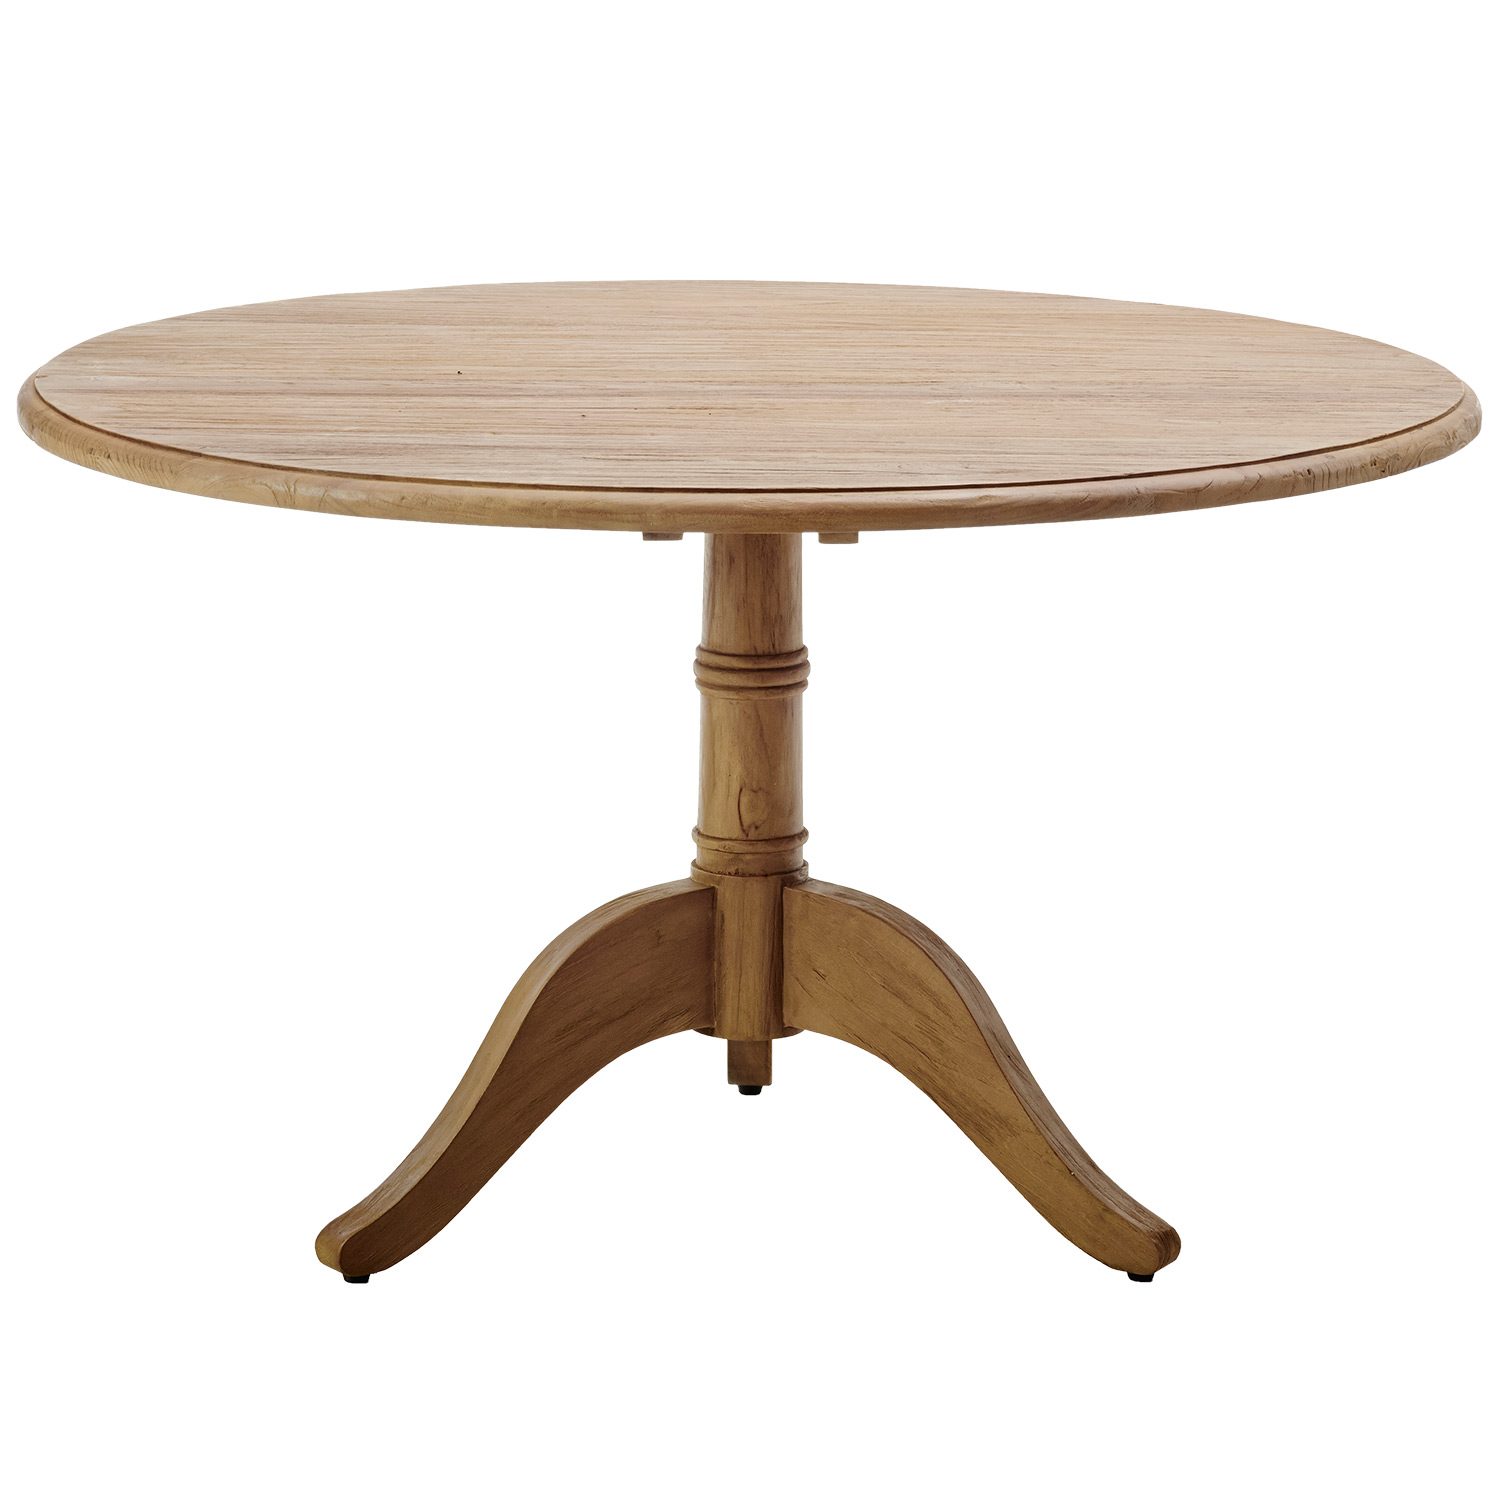 Michel matbord i teak med diametern 120 cm från Sika Design.